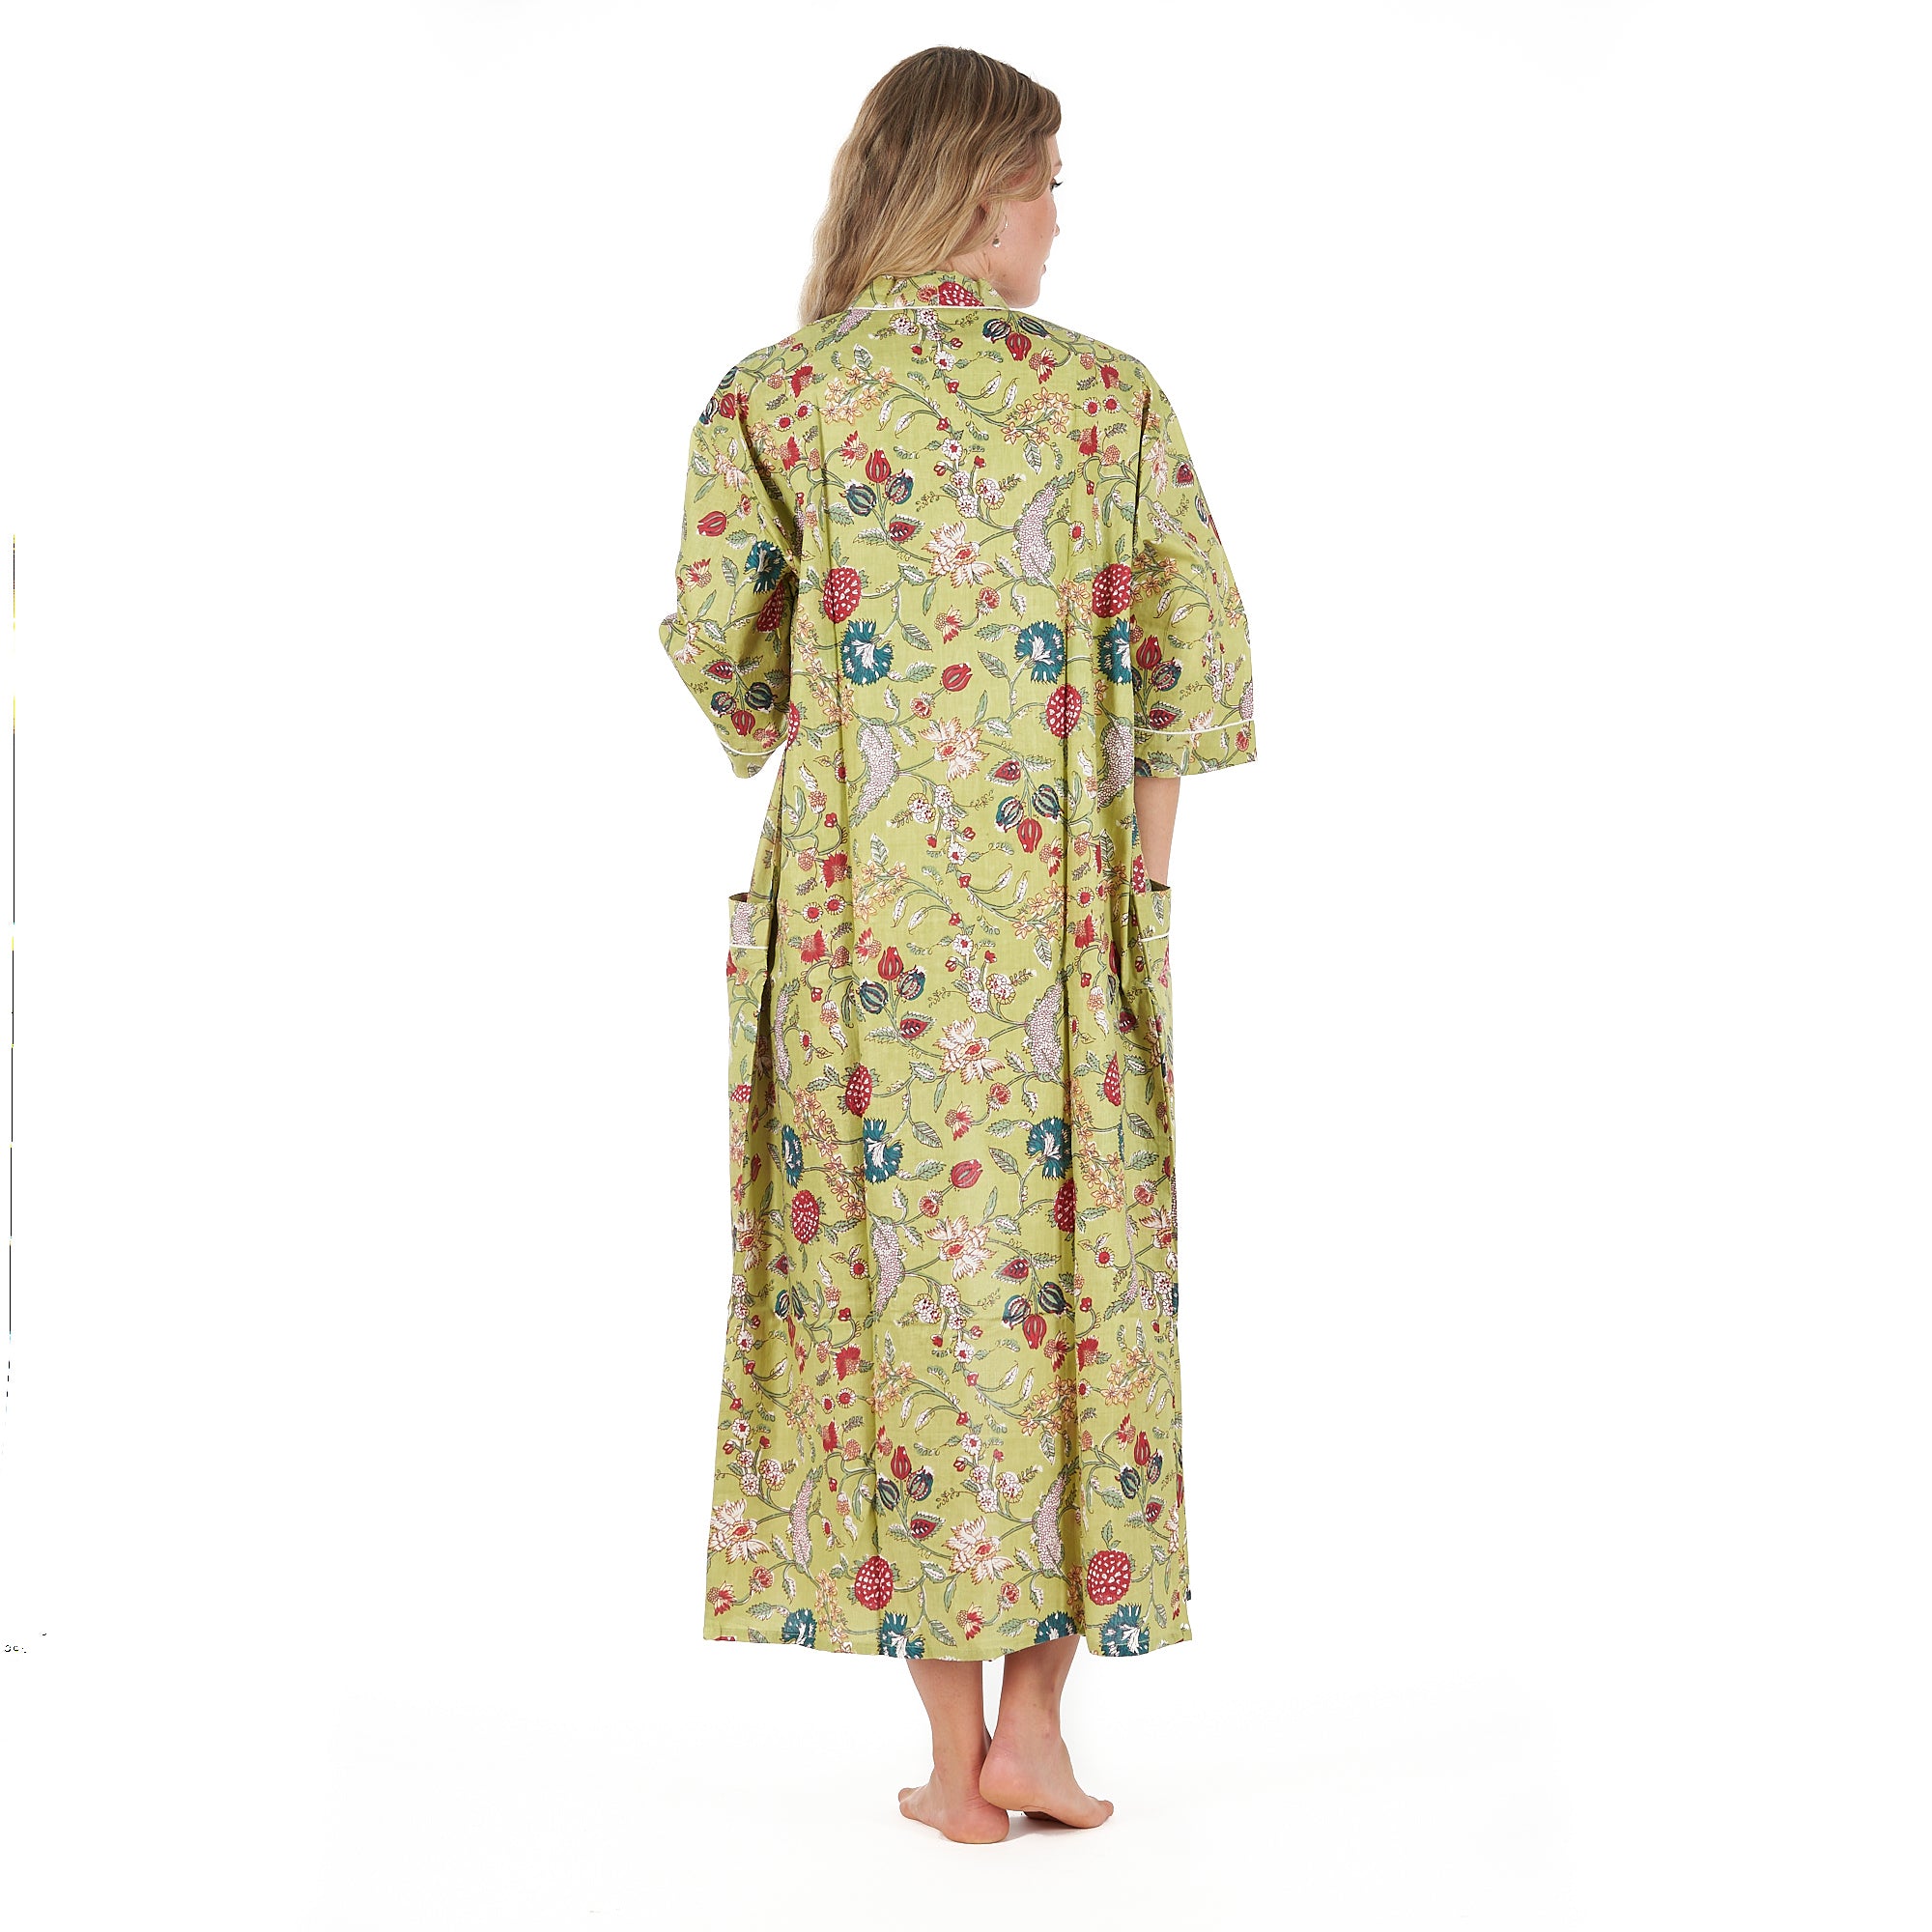 'Spring Bliss' 100% Cotton Kimono Robe